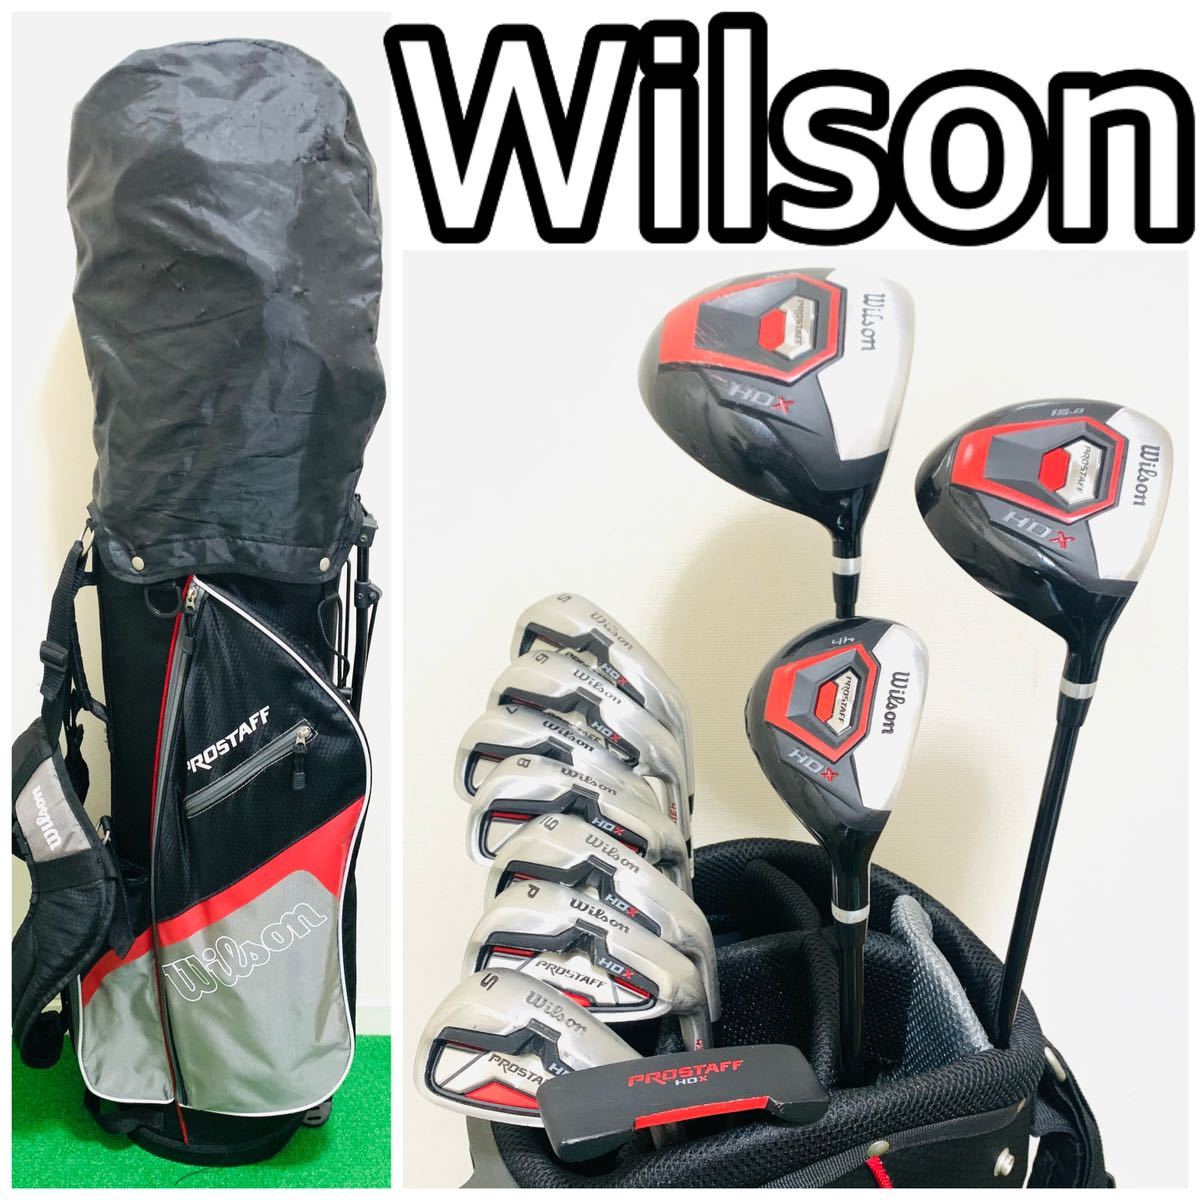 新着商品 5878 Wilson ウィルソン HDX メンズ 右利き ゴルフクラブフル